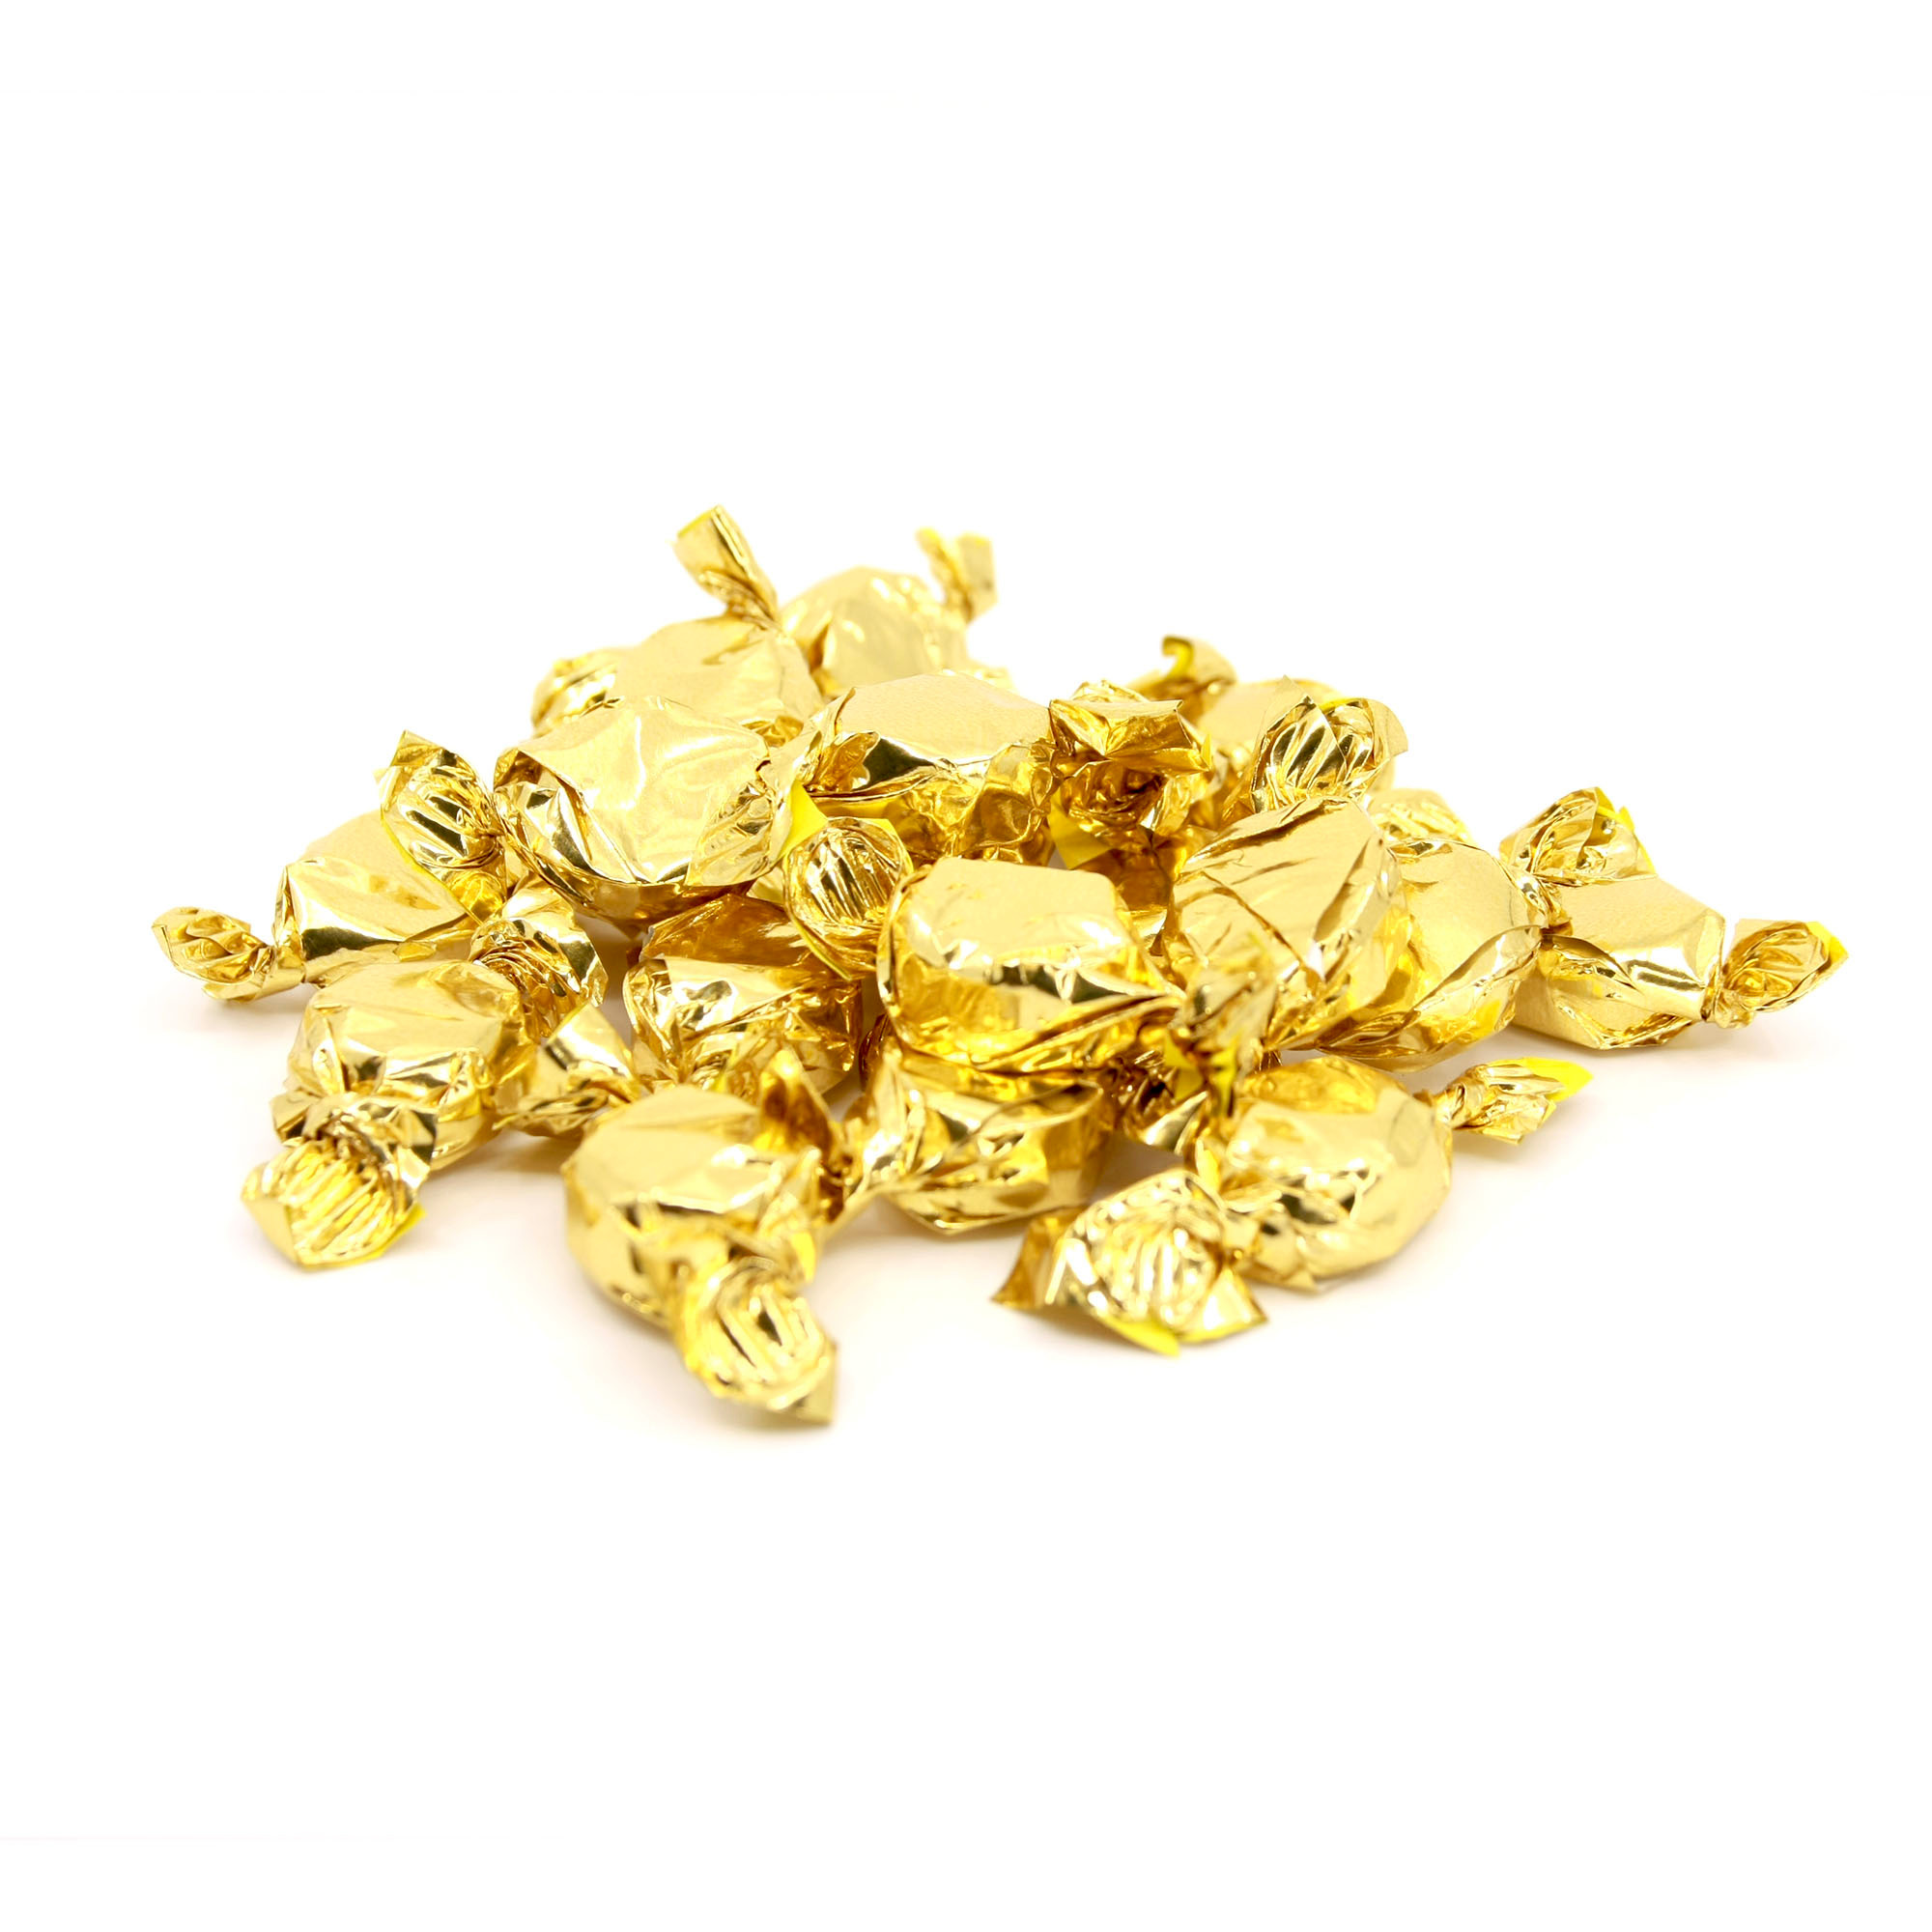 Guldkarameller - 2,5 kg